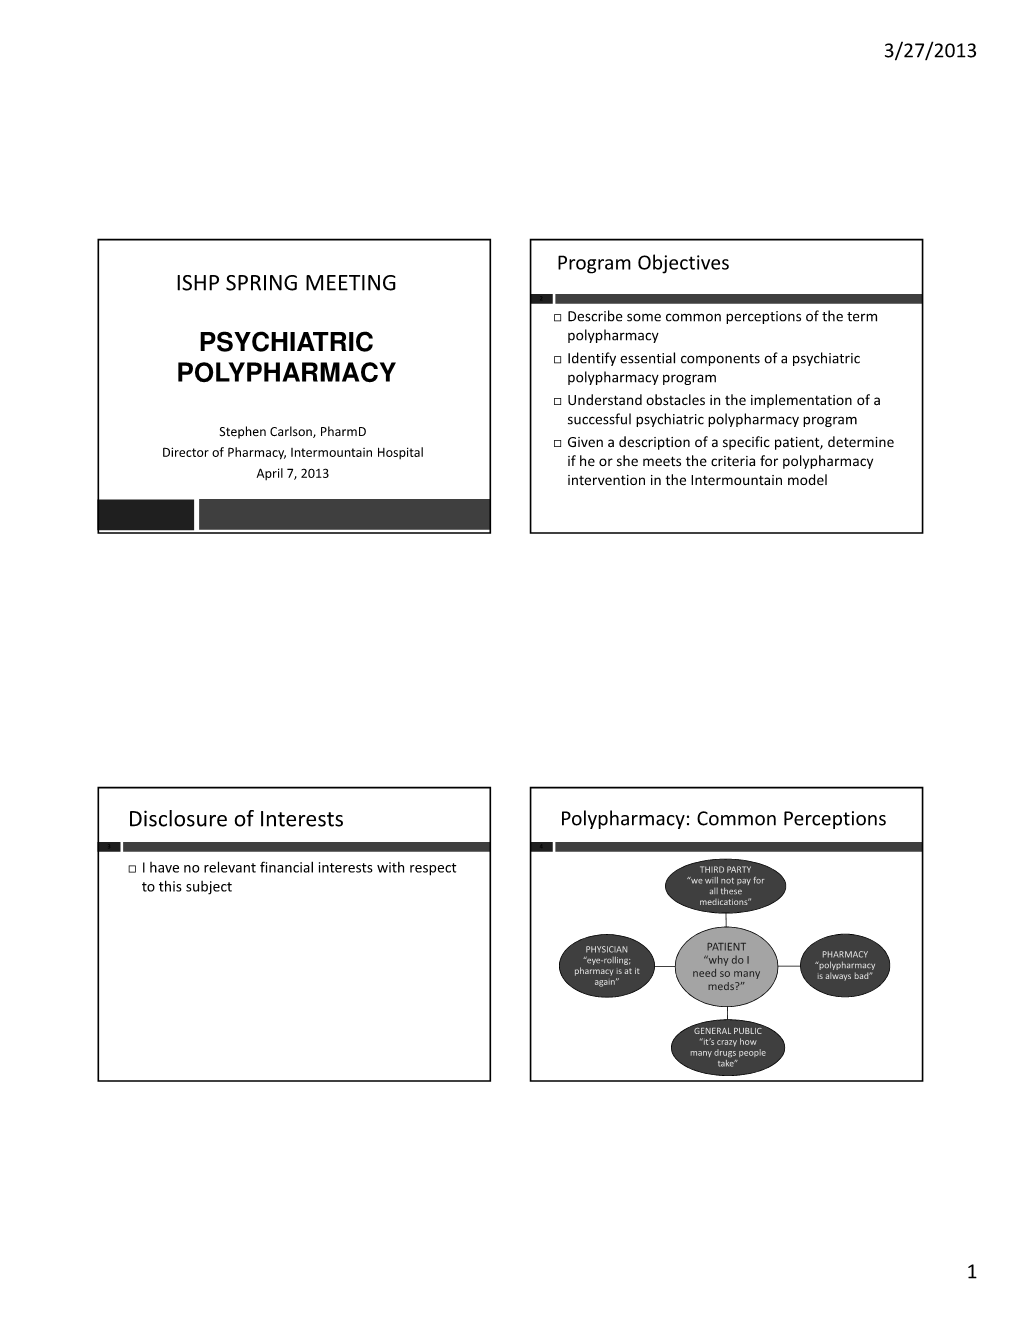 PSYCHIATRIC Polypharmacy  Identify Essential Components of a Psychiatric POLYPHARMACY Polypharmacy Program